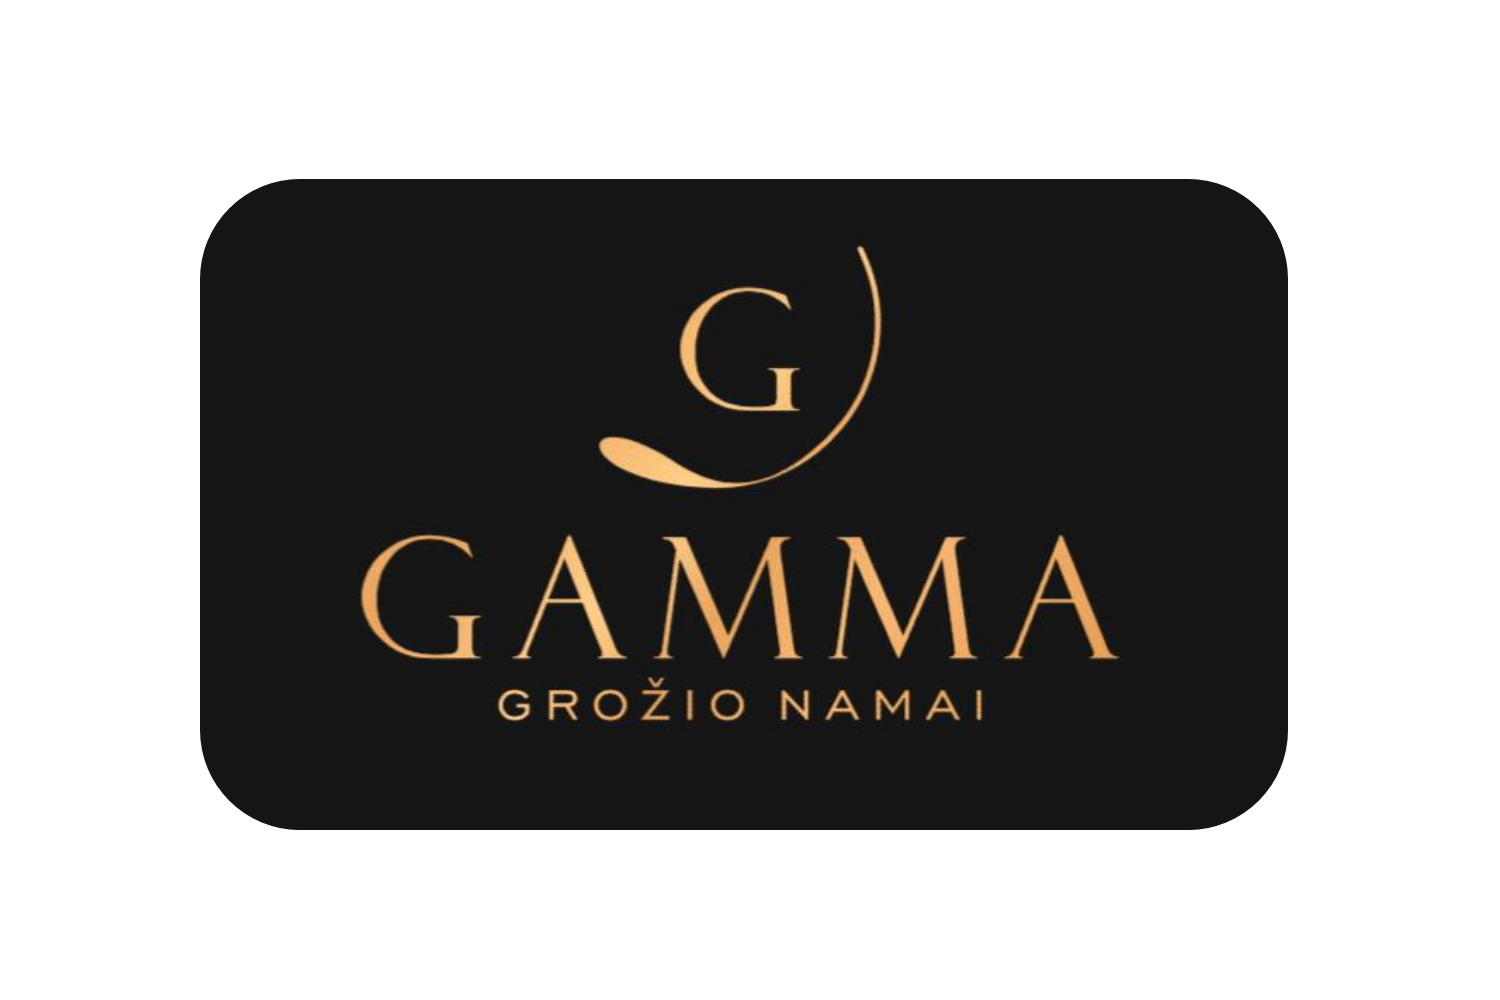 Gamma grožio namai di ed - Mafija tamsoje klientai